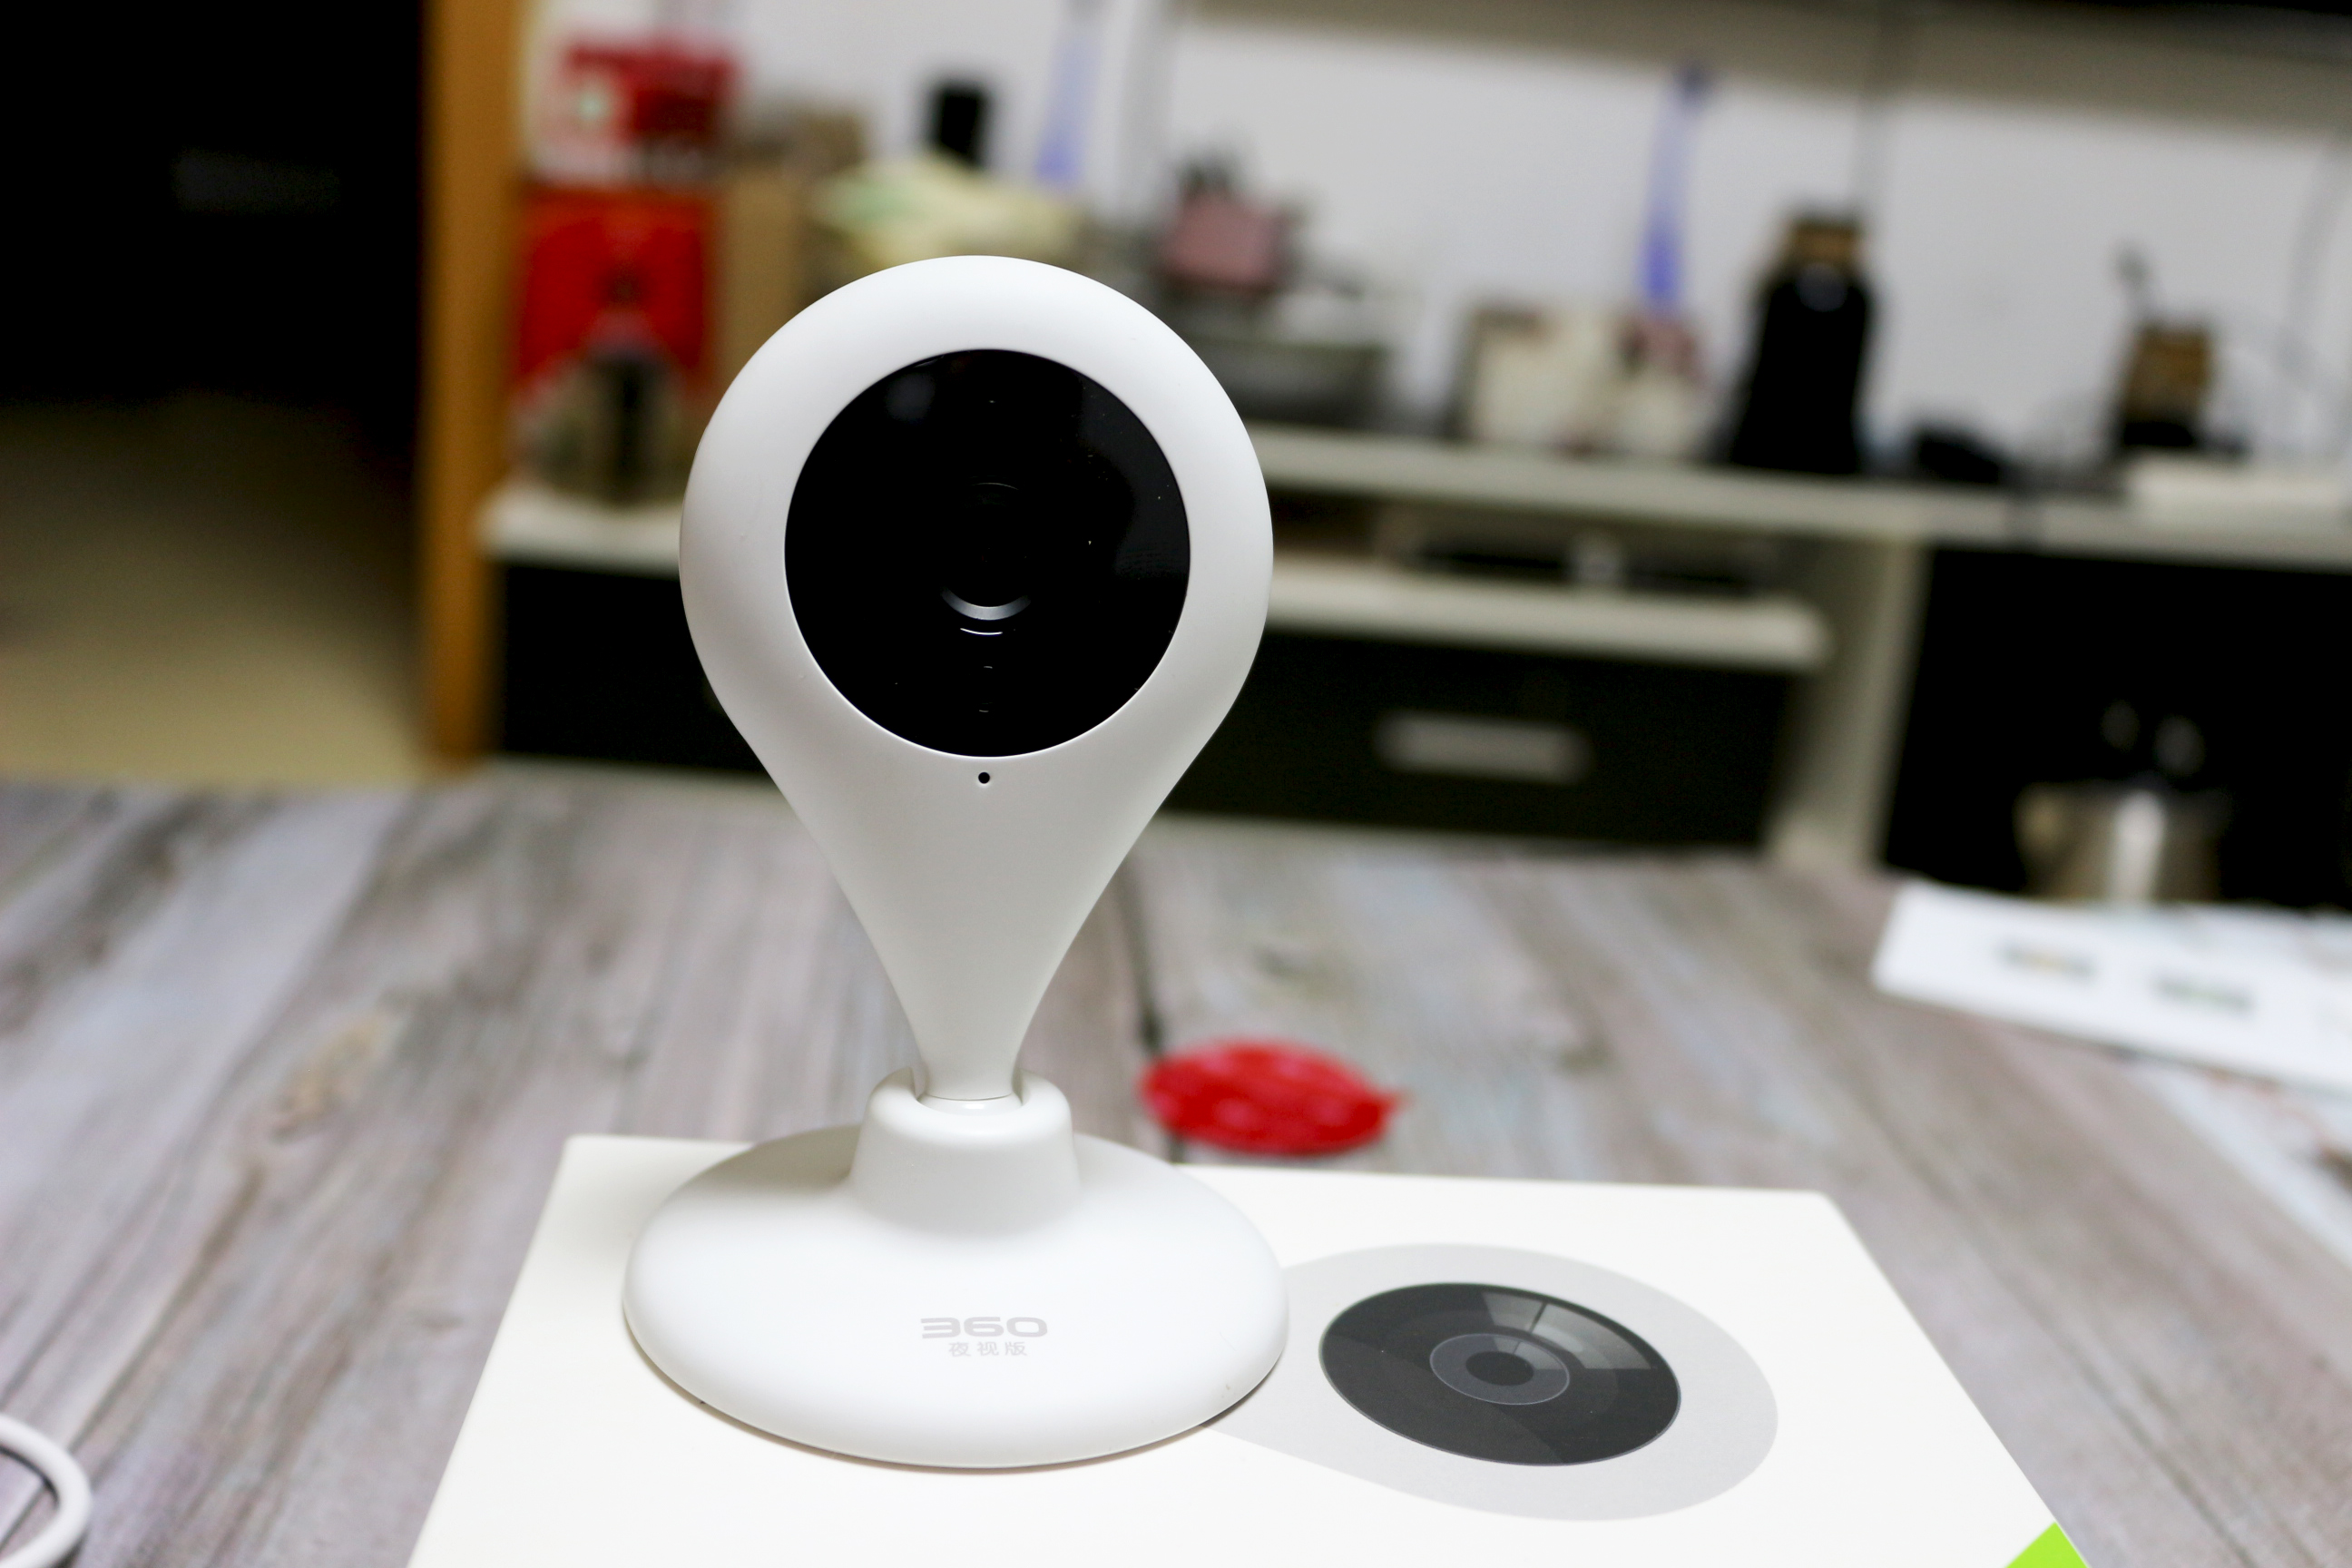 360智能摄像头夜视版带你了解家庭安全智能解决方案